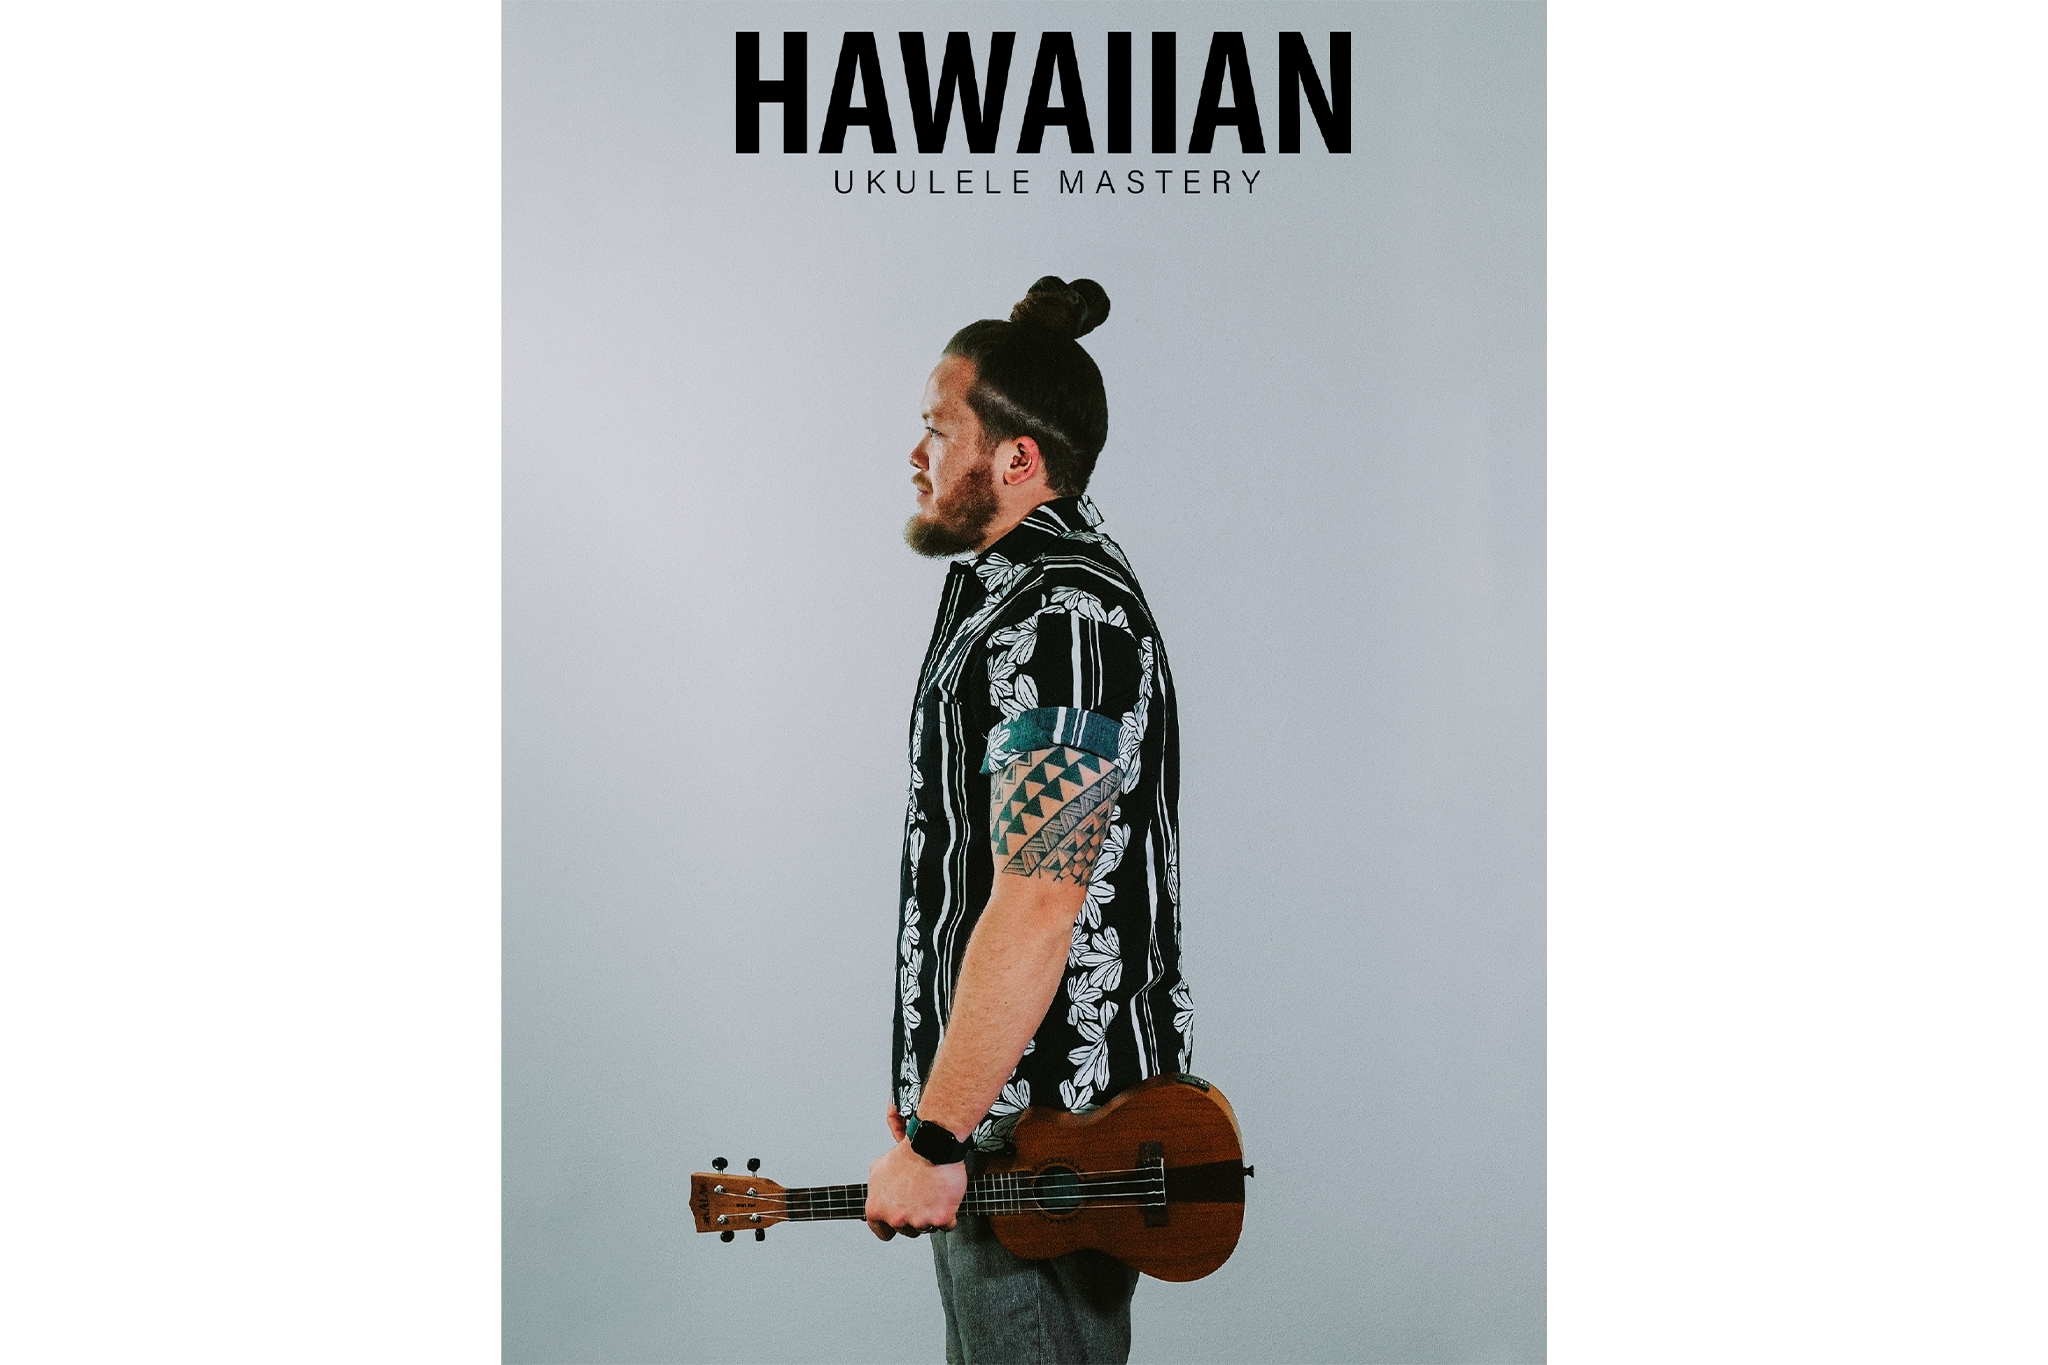 Hawaiian Ukulele Mastery Songbook by Uke Like The Pros & Anthony Stanley